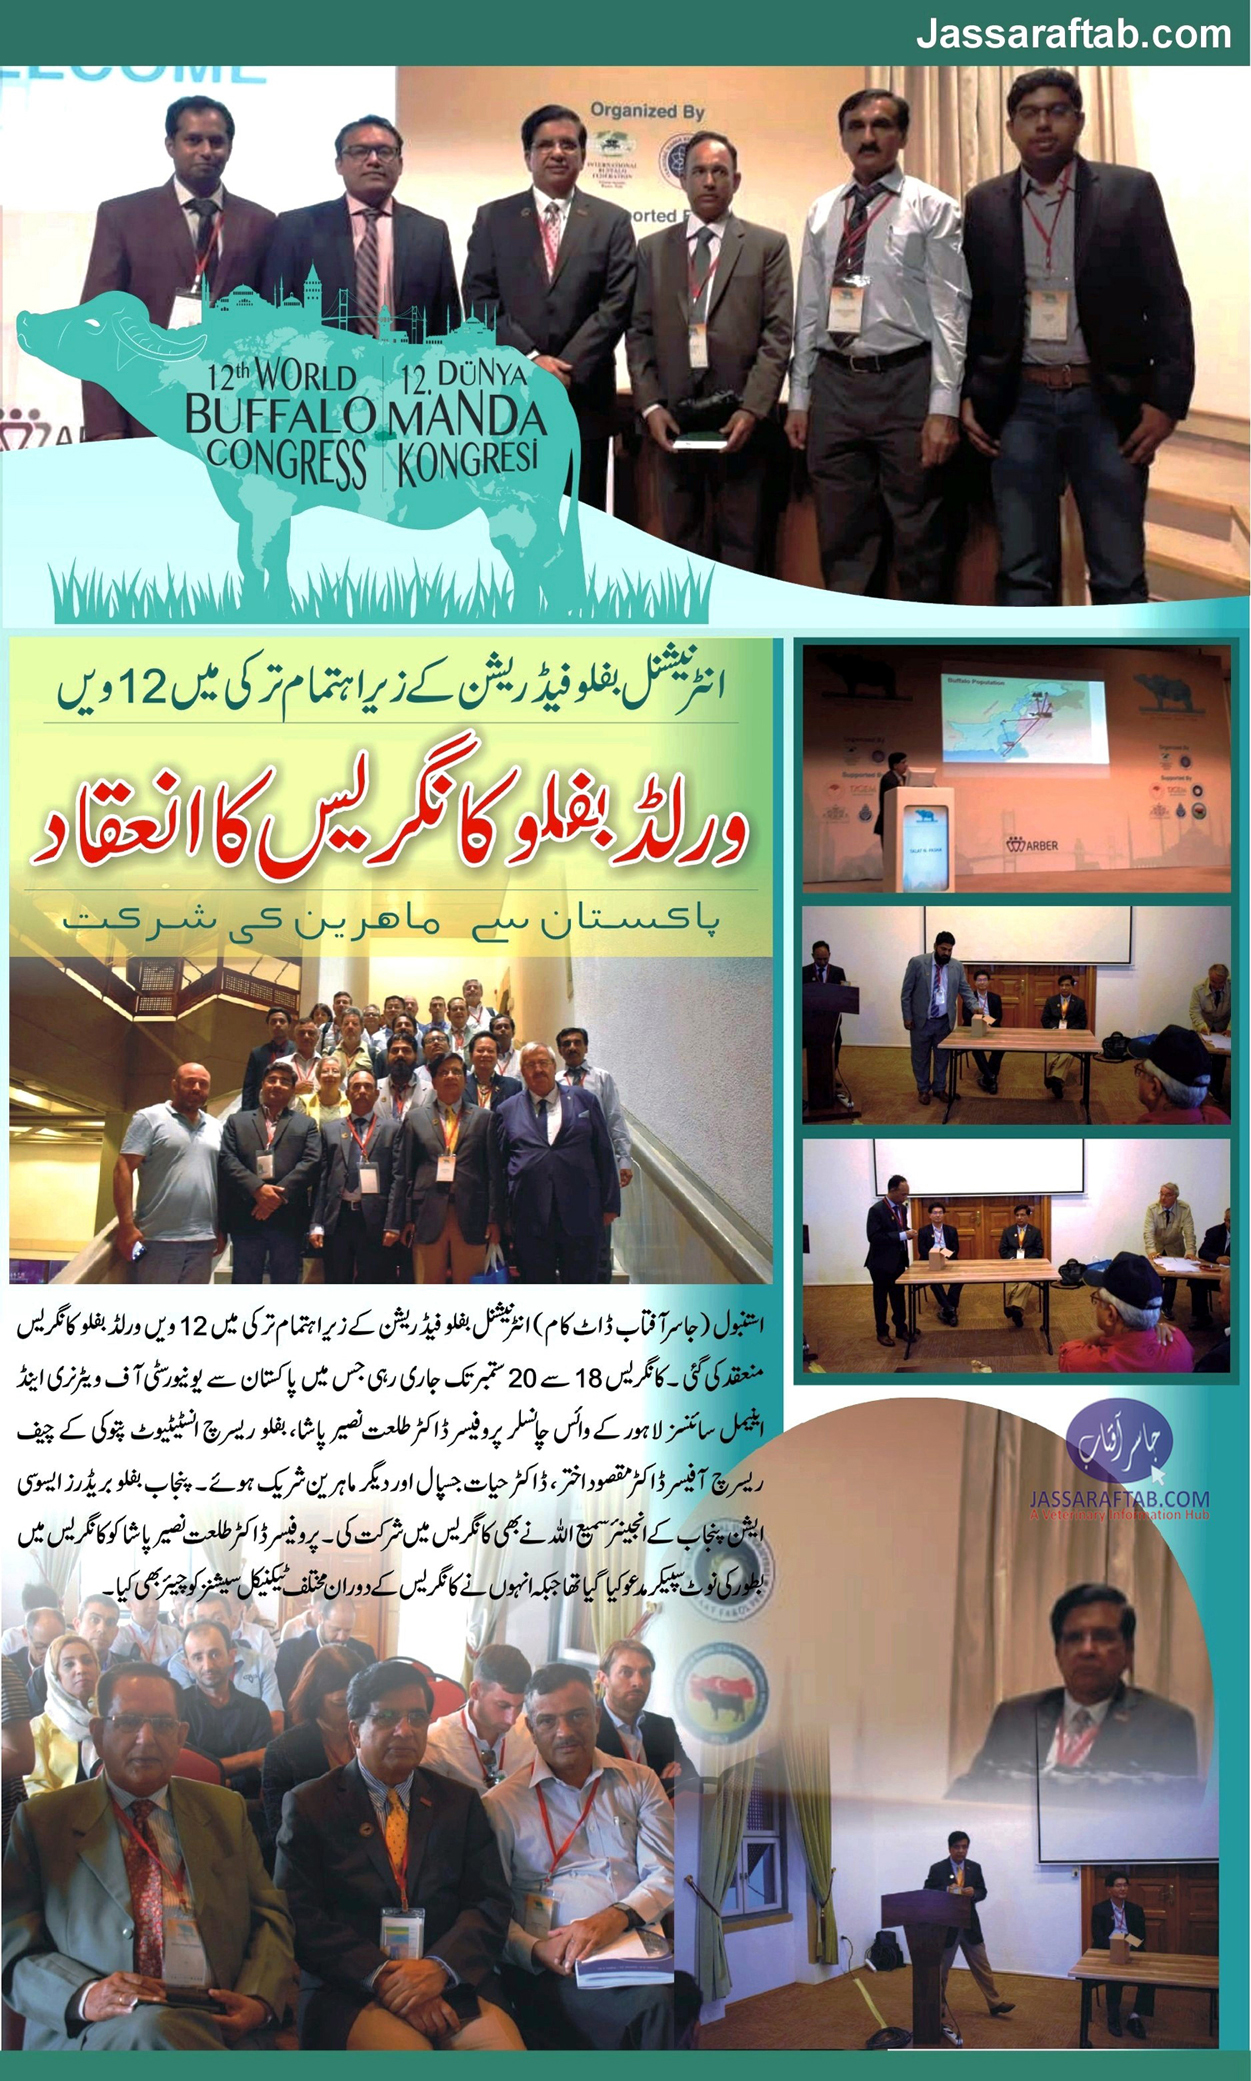 World Buffalo Congress held at Istanbul by International Buffalo Federation